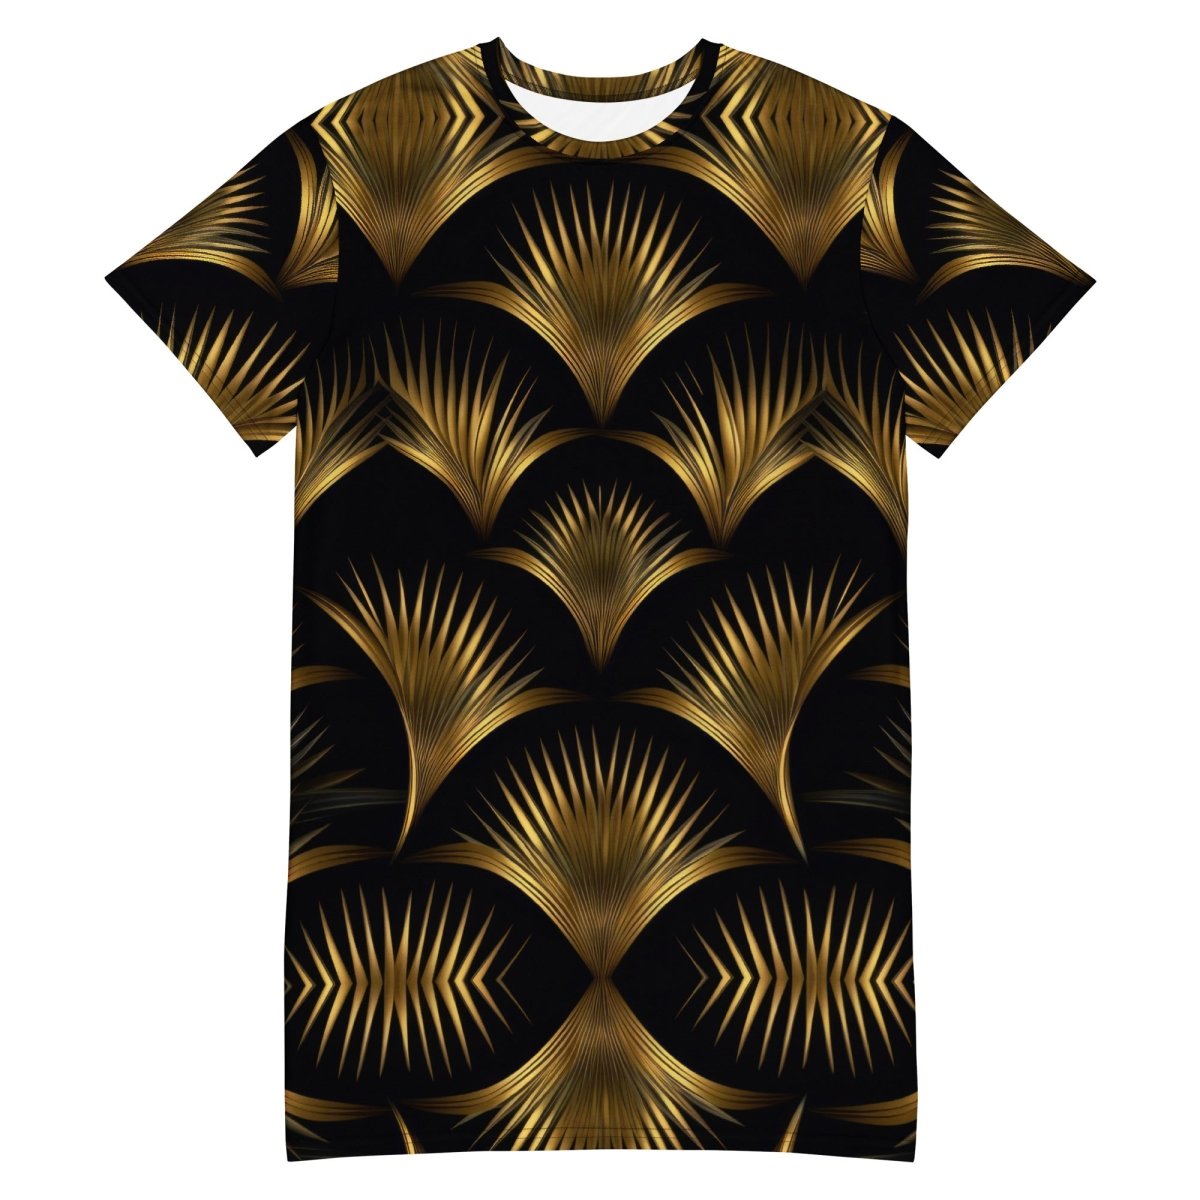 Sefira Golden Summer T-shirt dress | Sefira Beach Collection Woman - Sefira Collections